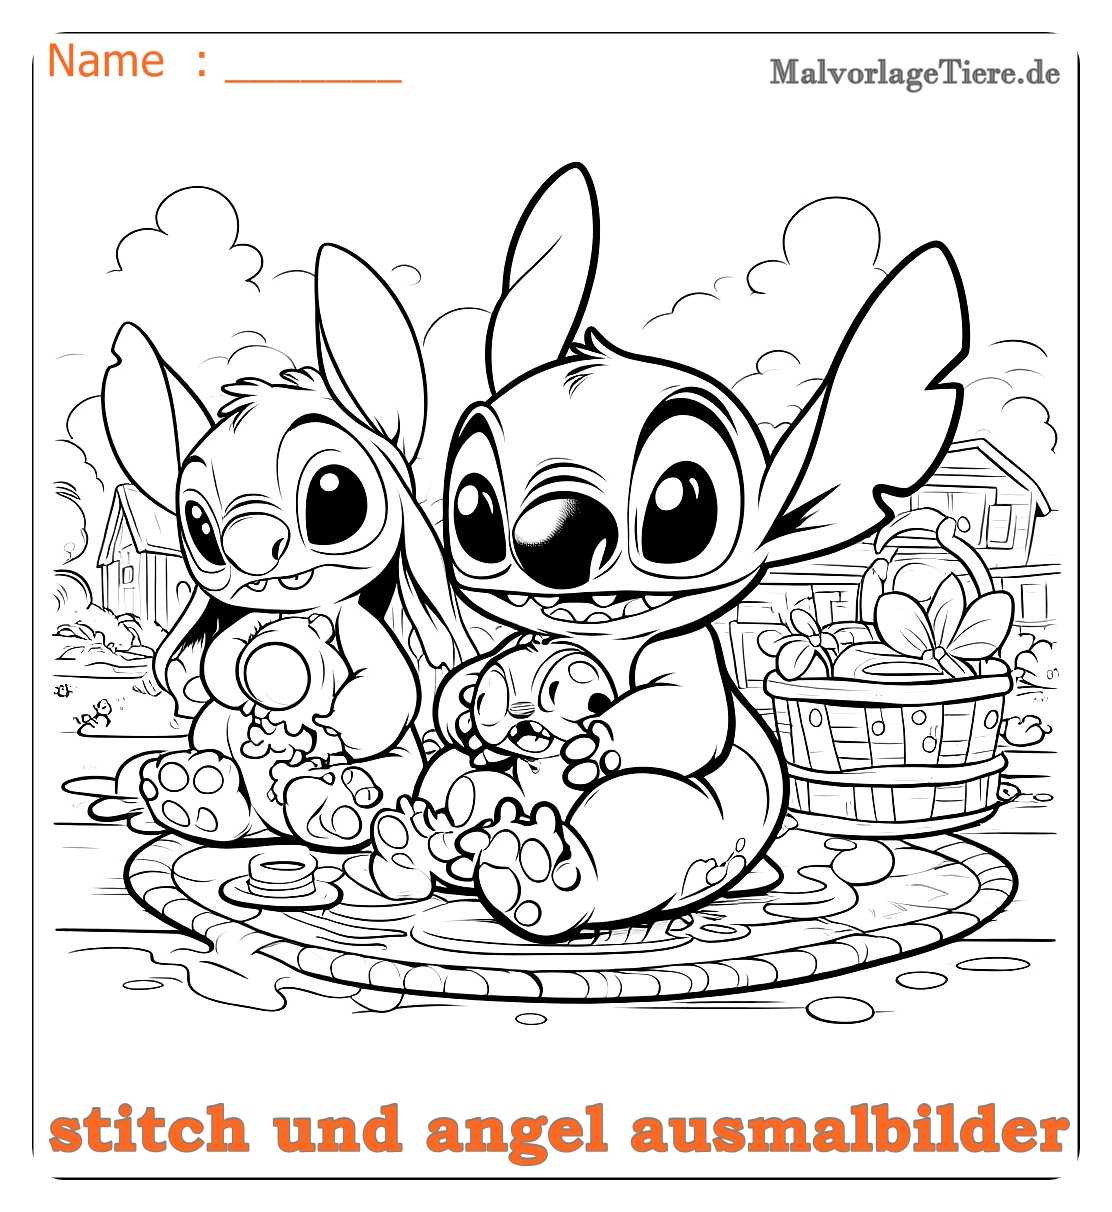 stitch und angel ausmalbilder07 by malvorlagetiere.de